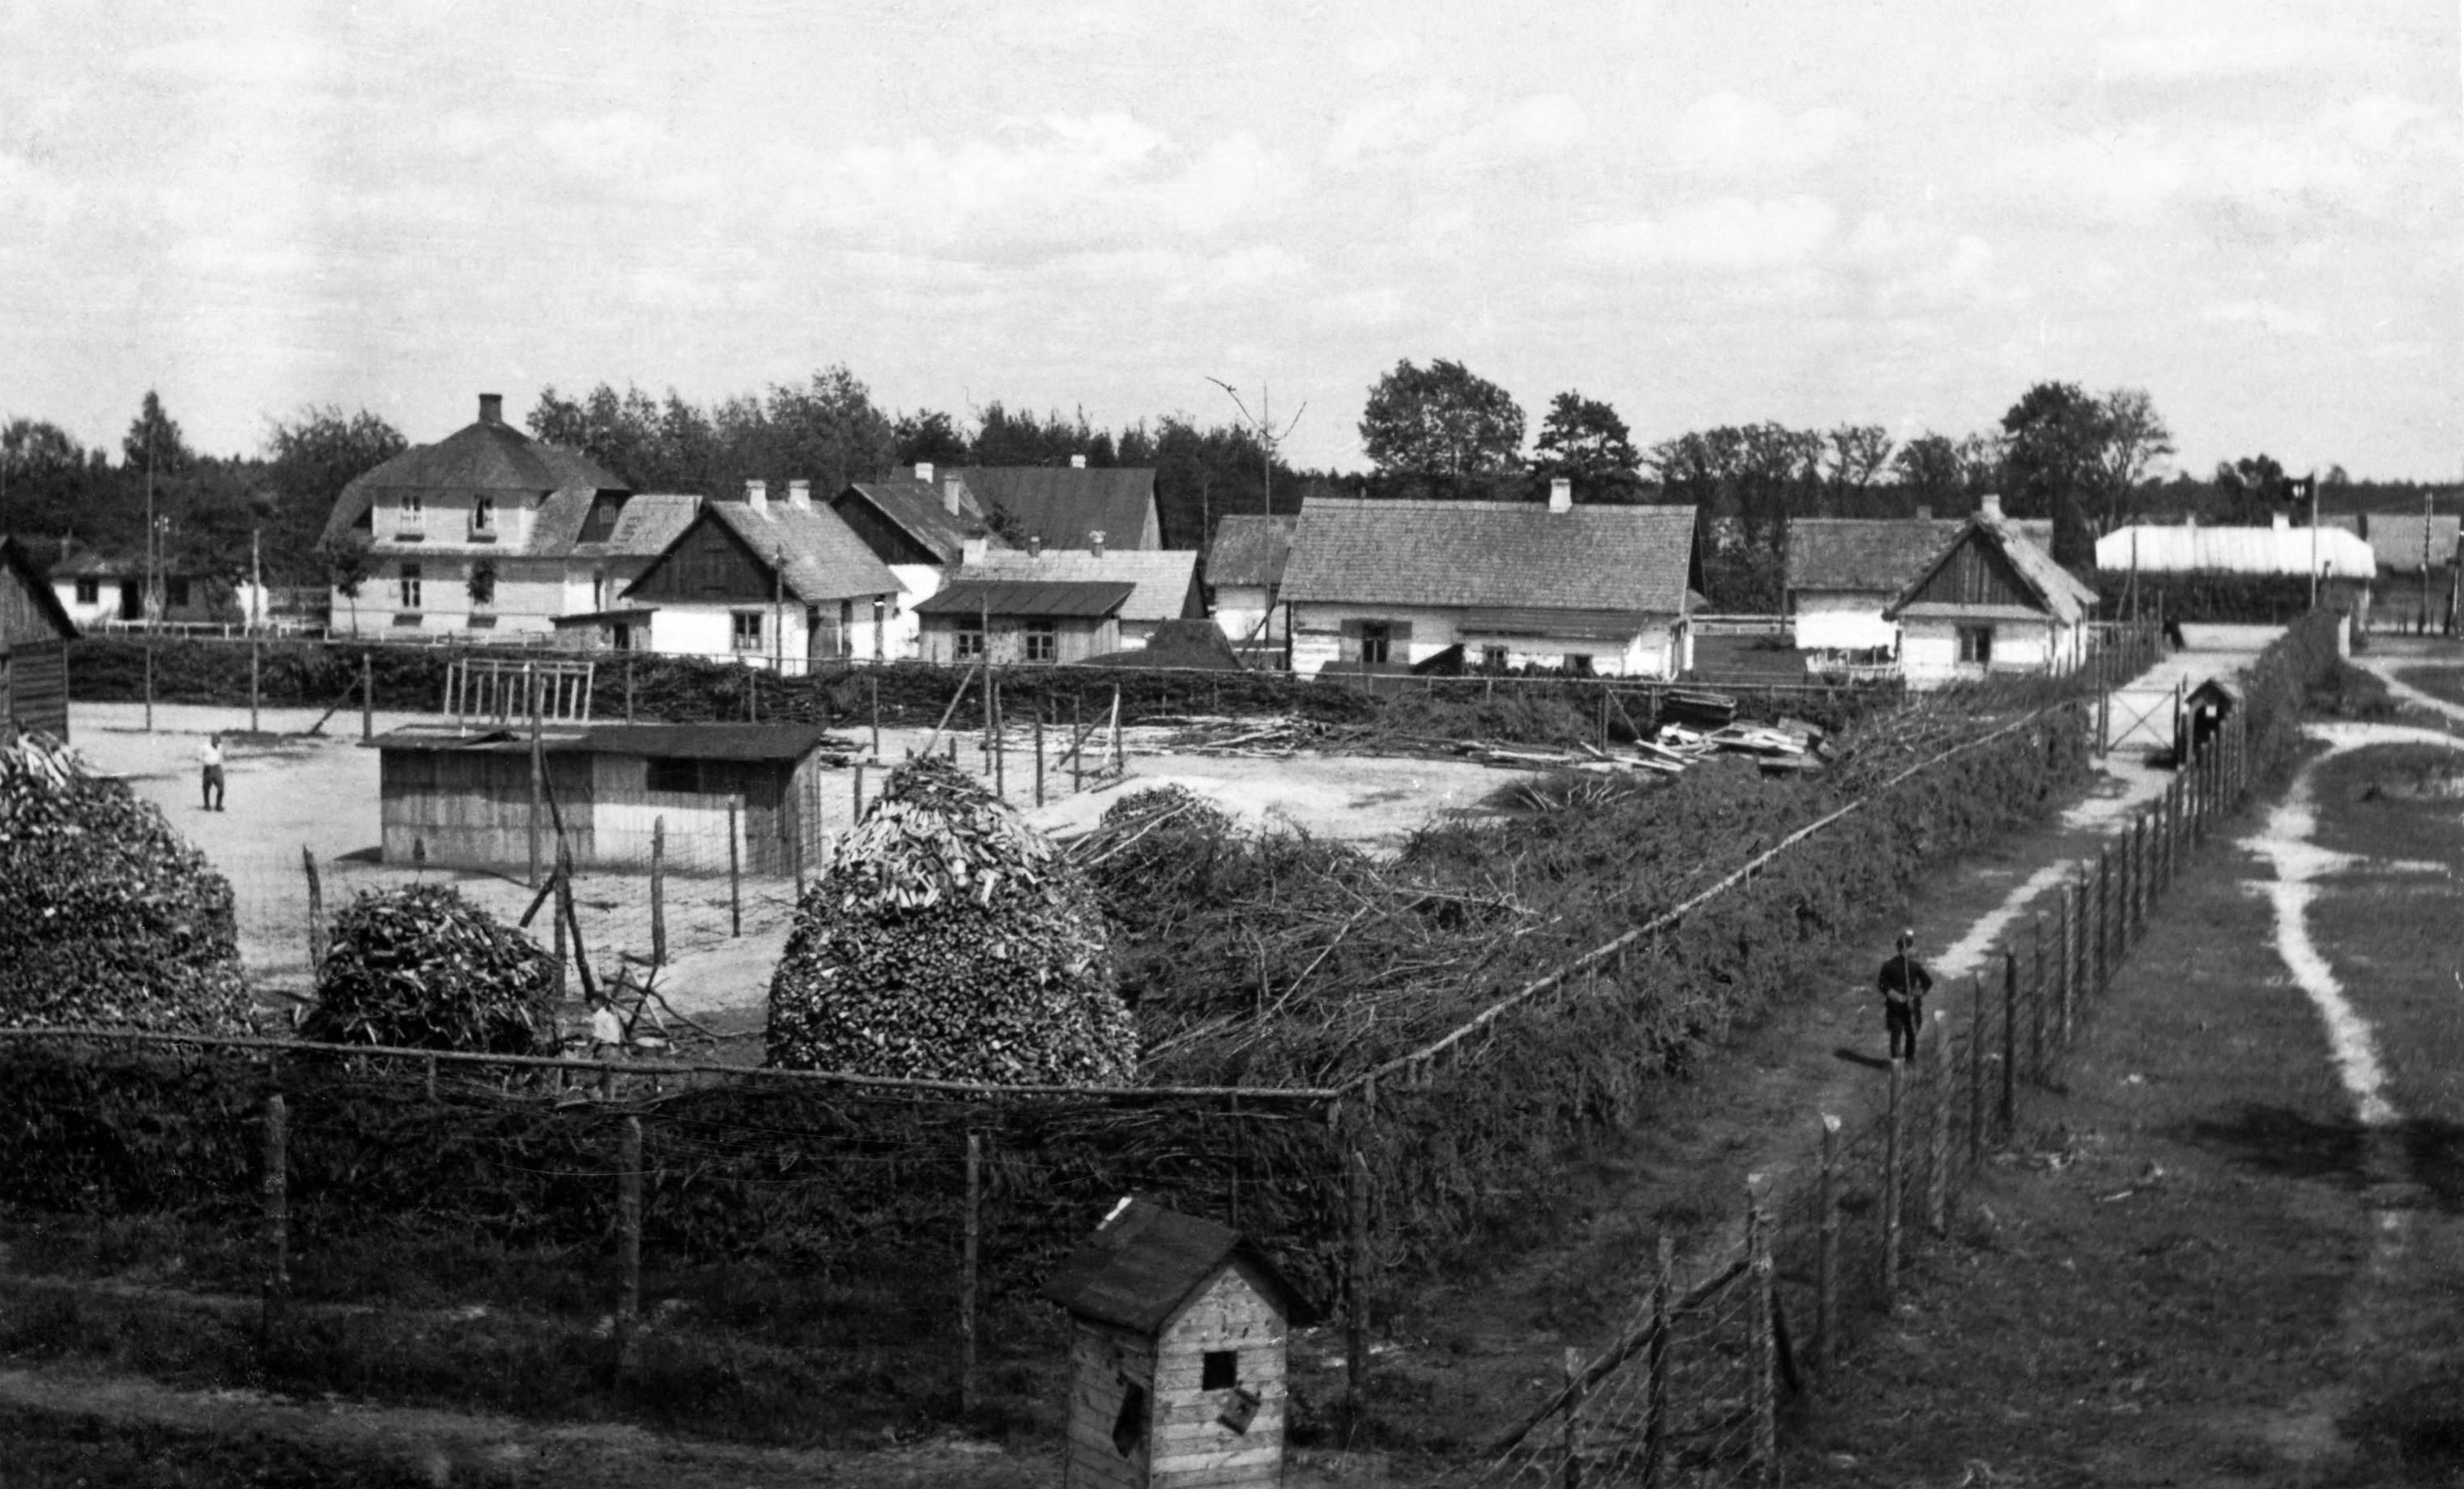 (pdf) Belzec, Sobibor, Treblinka. Holocaust Denial And